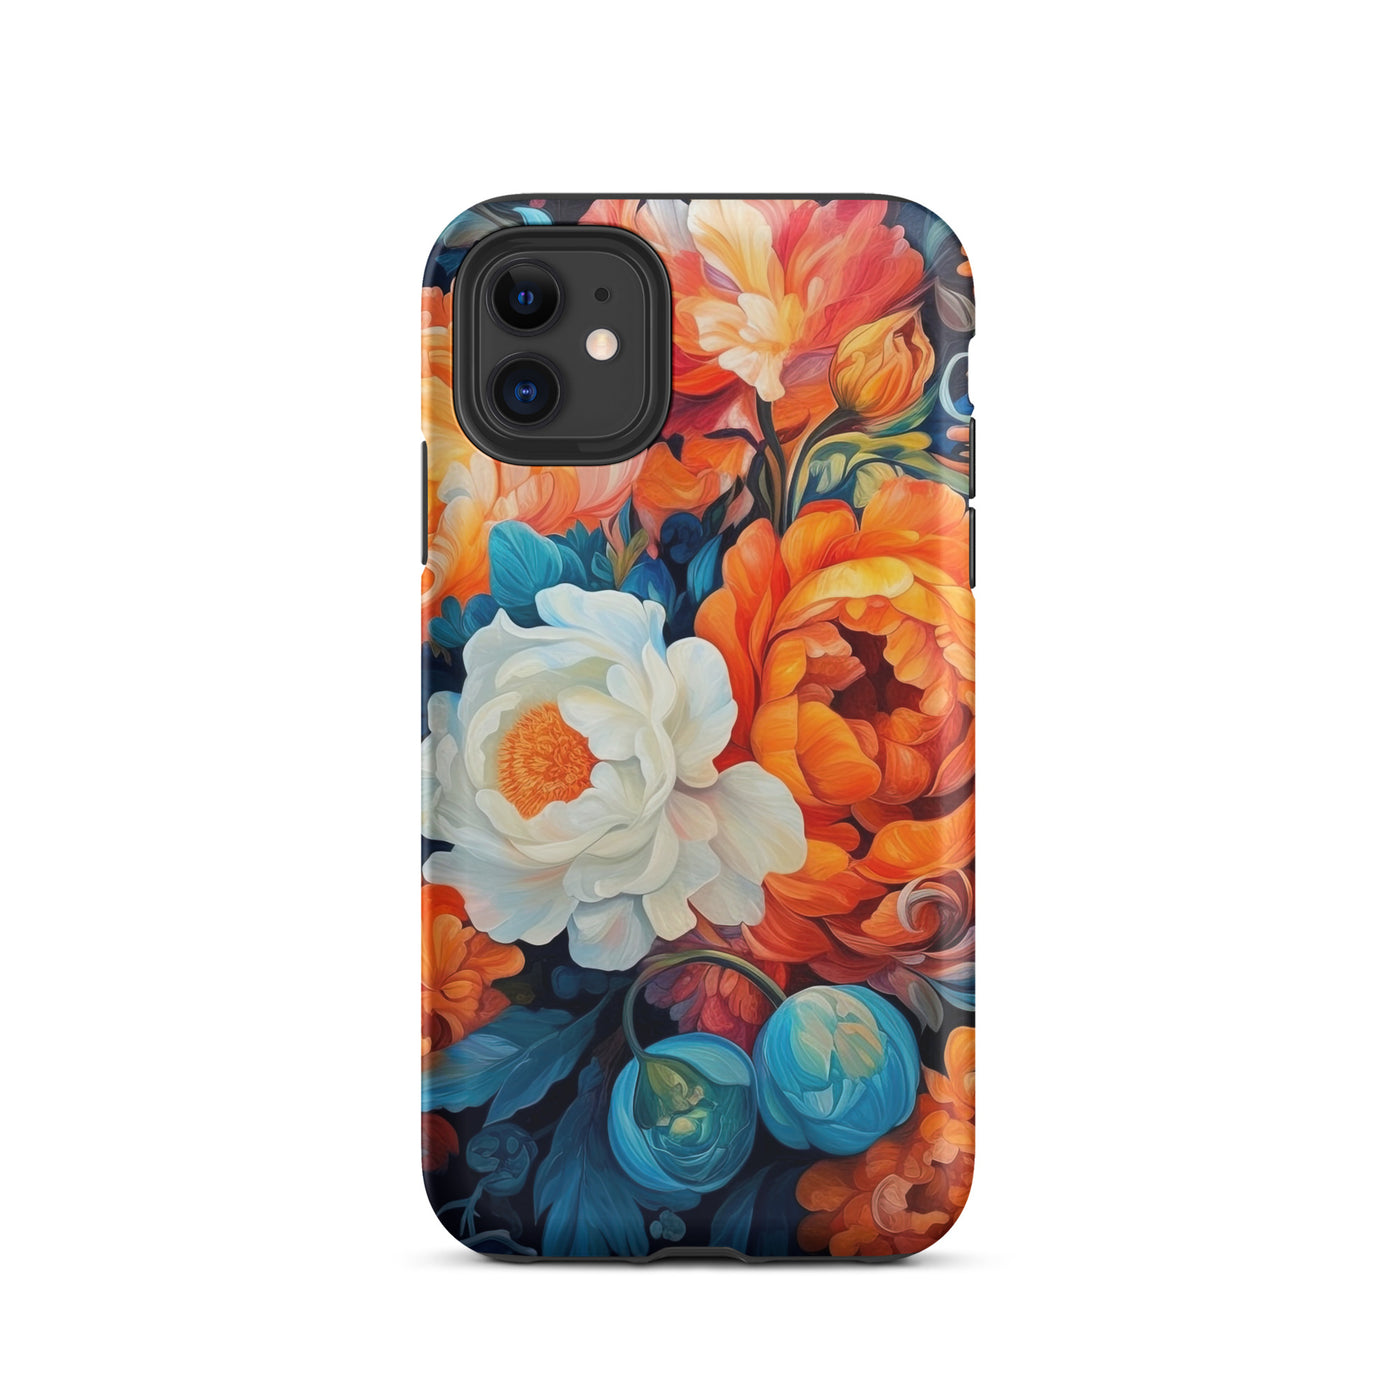 Bunte Blumen - Schöne Malerei - iPhone Schutzhülle (robust) camping xxx iPhone 11